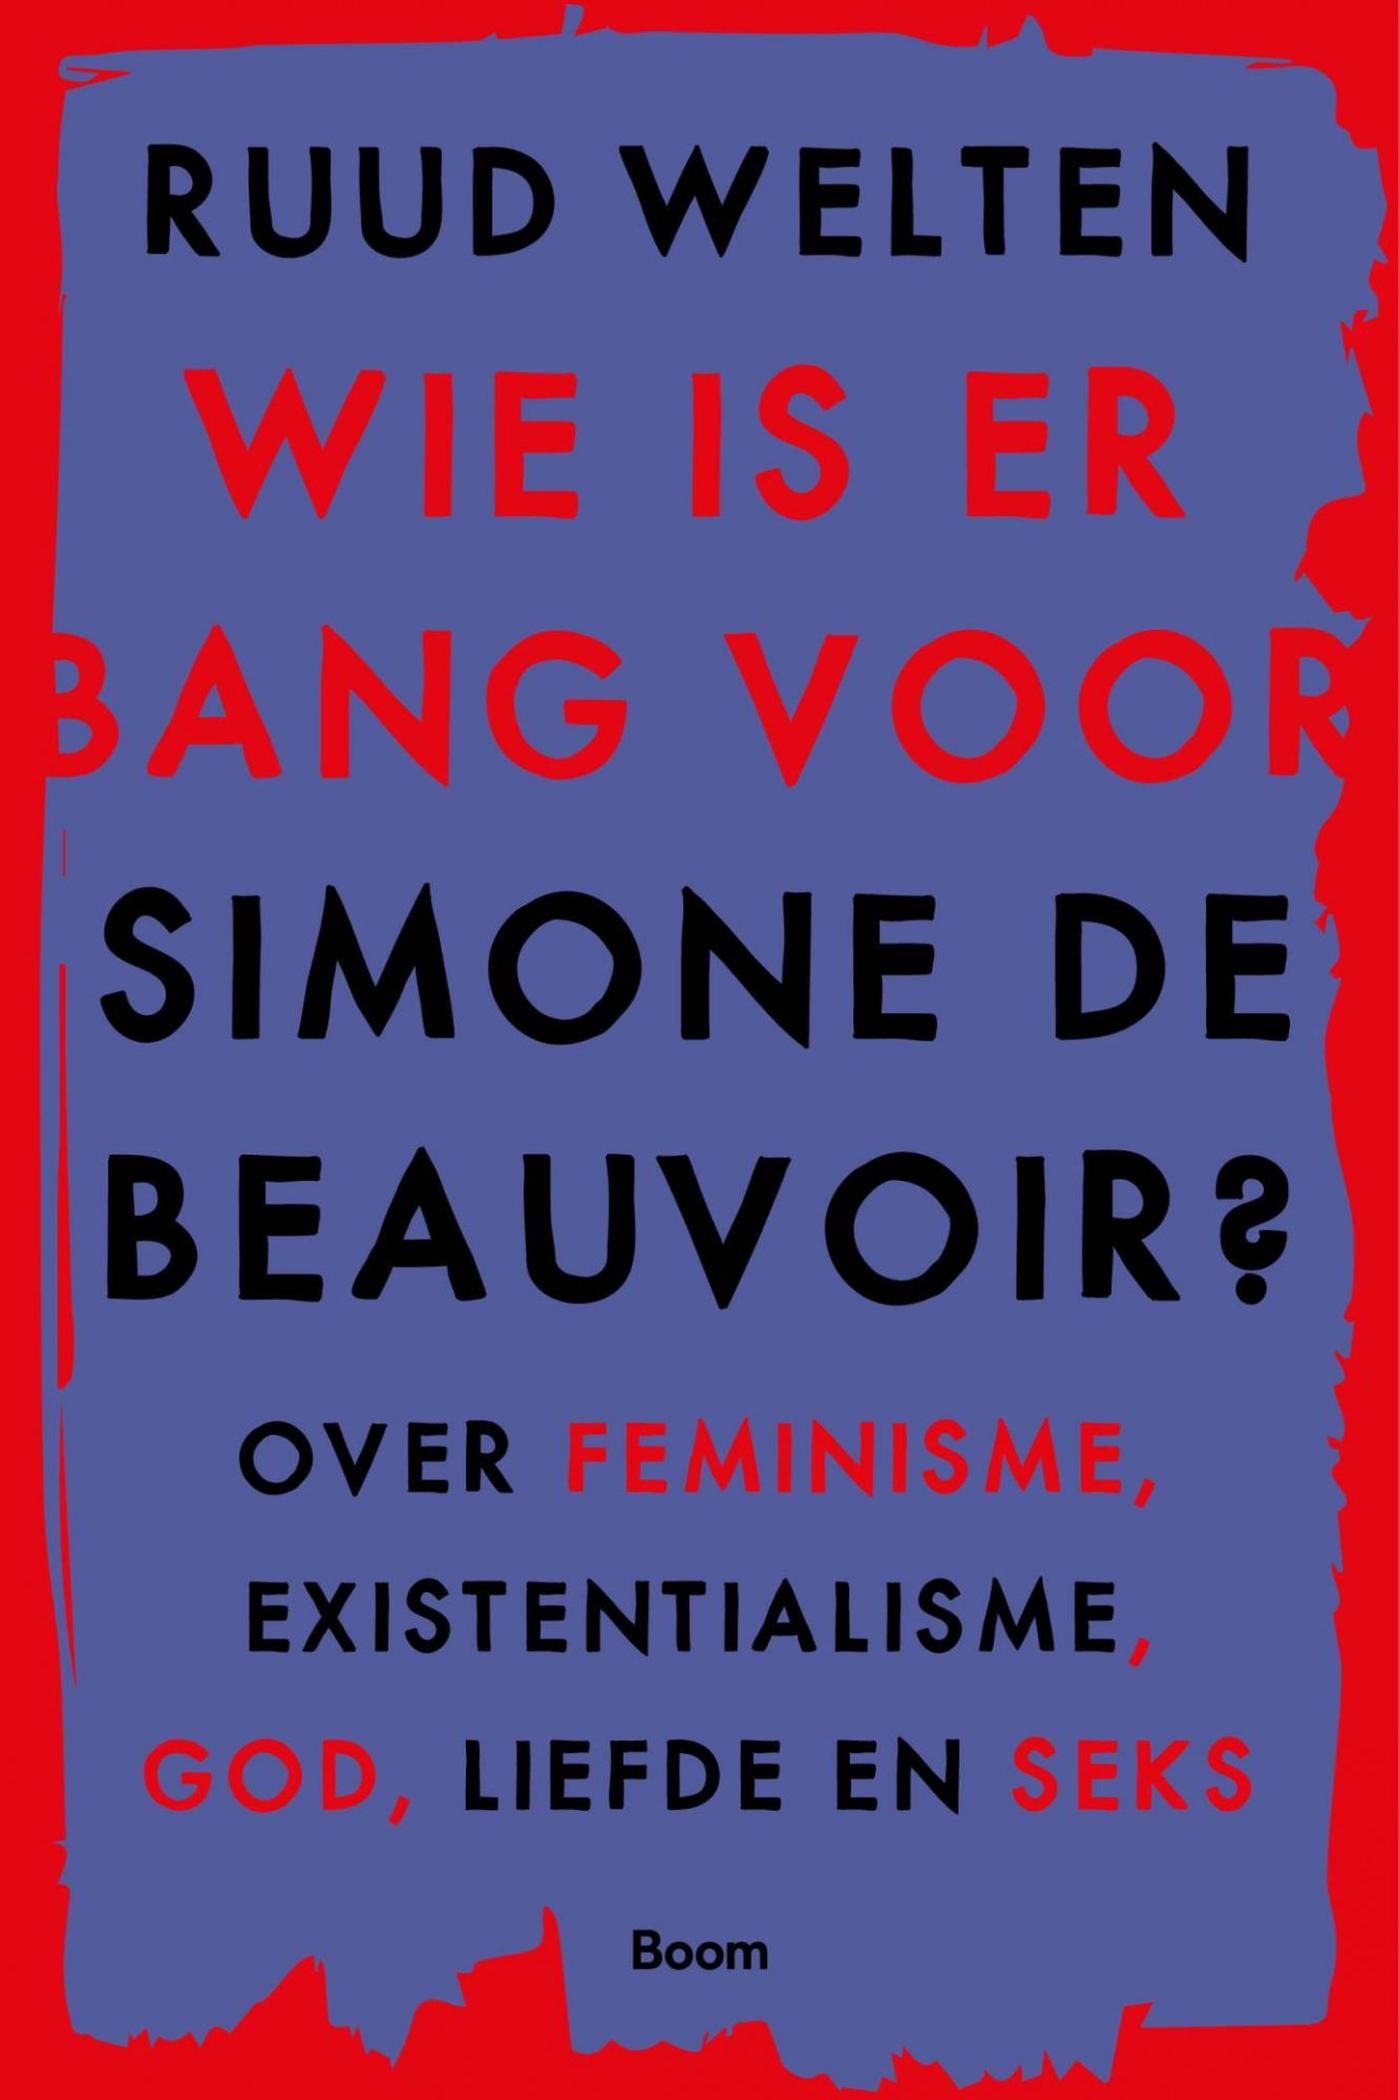 Wie is er bang voor Simone de Beauvoir